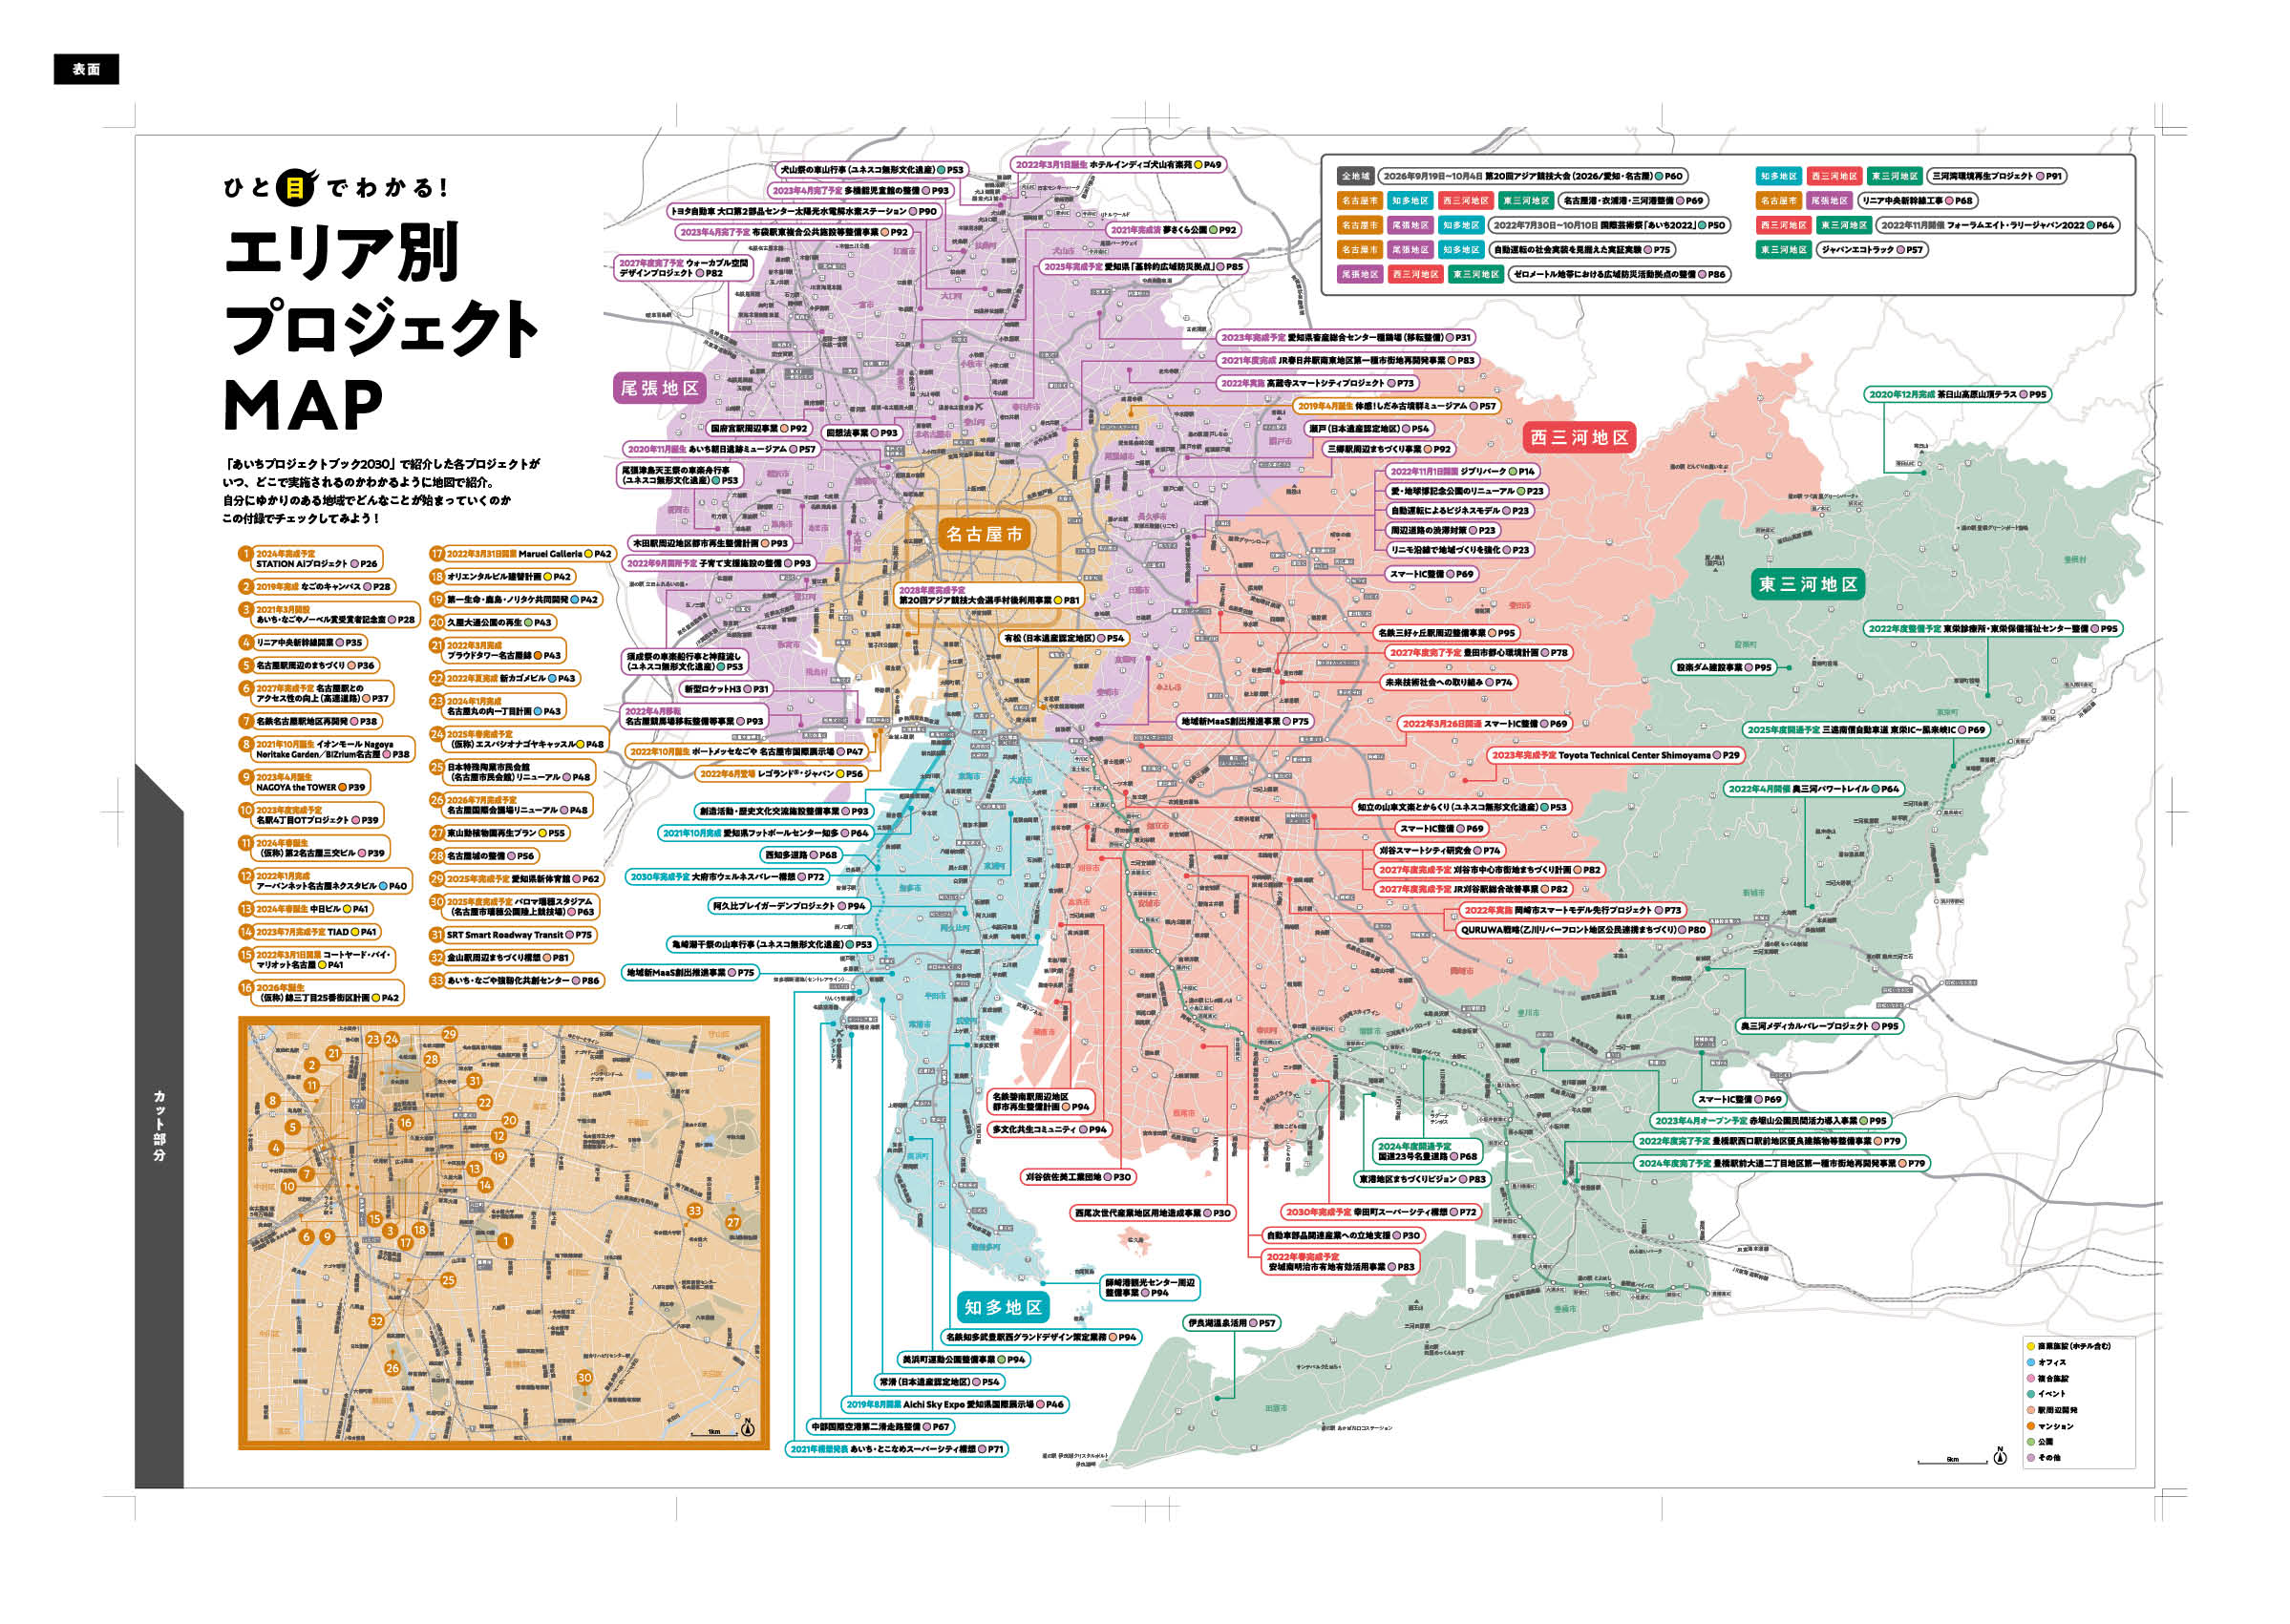 2030年に向けた愛知県の重要プロジェクトを一挙紹介！『あいちプロジェクトブック2030』発売